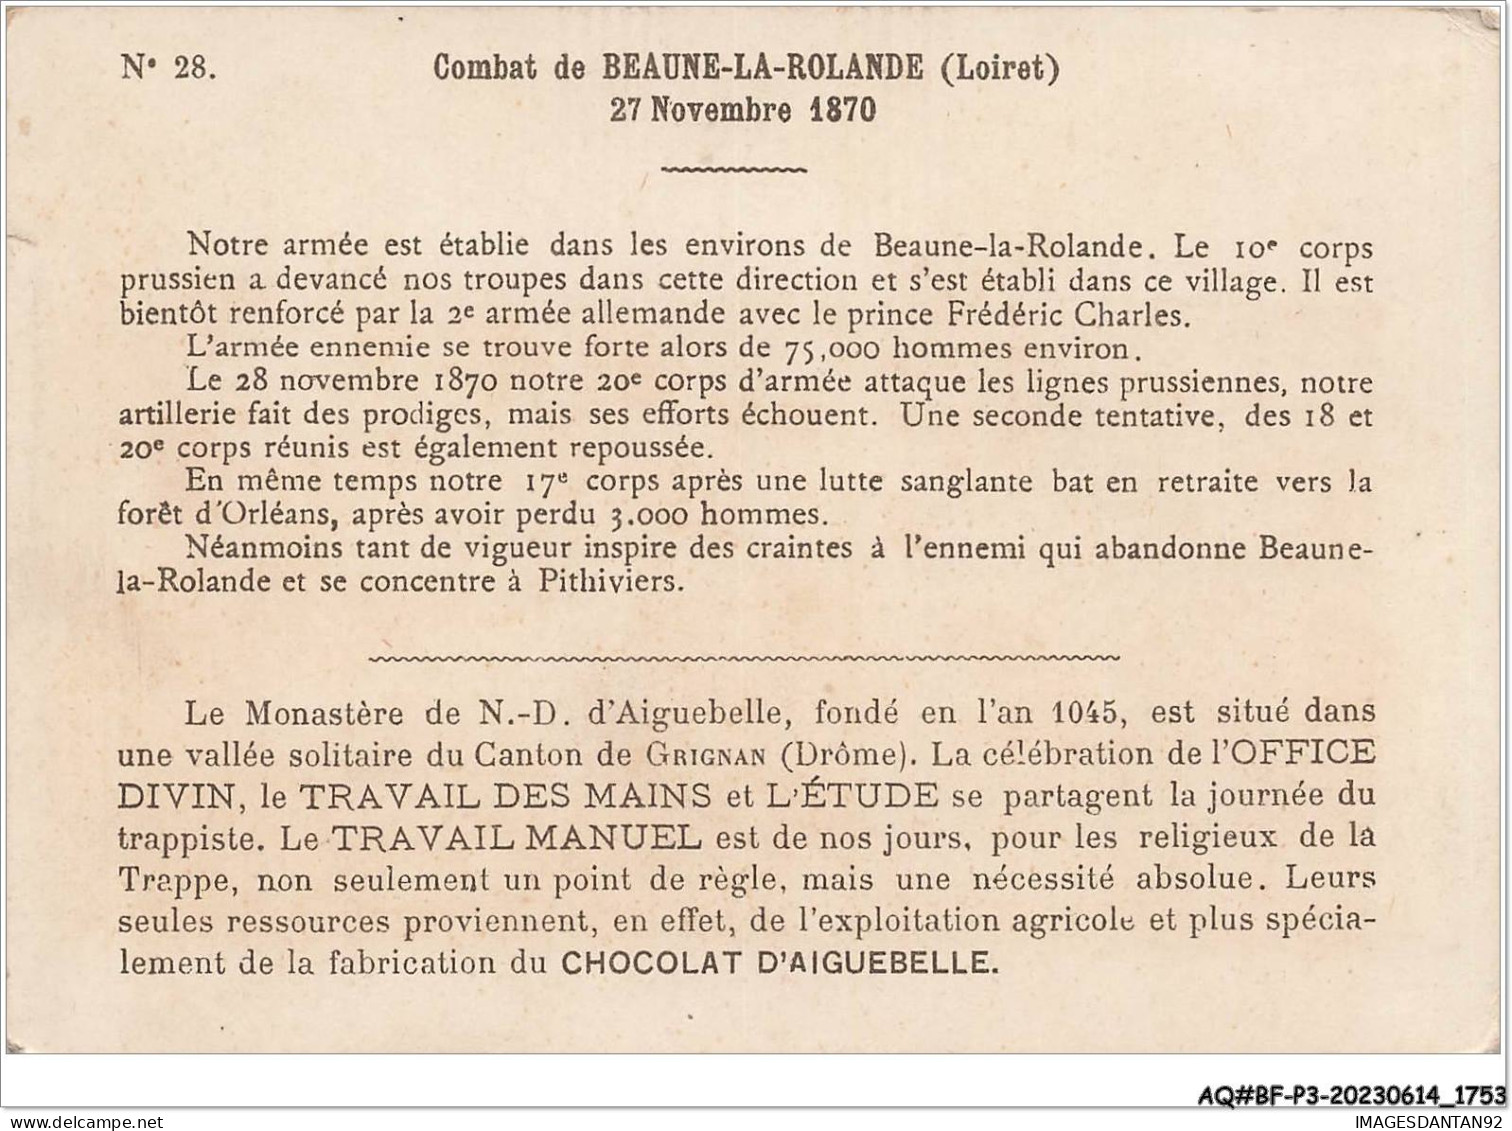 AQ#BFP3-CHROMOS-0874 - CHOCOLAT D'AIGUEBELLE - Bataille De Beaune-la-Rolande - 27 Novembre 1870 - Aiguebelle